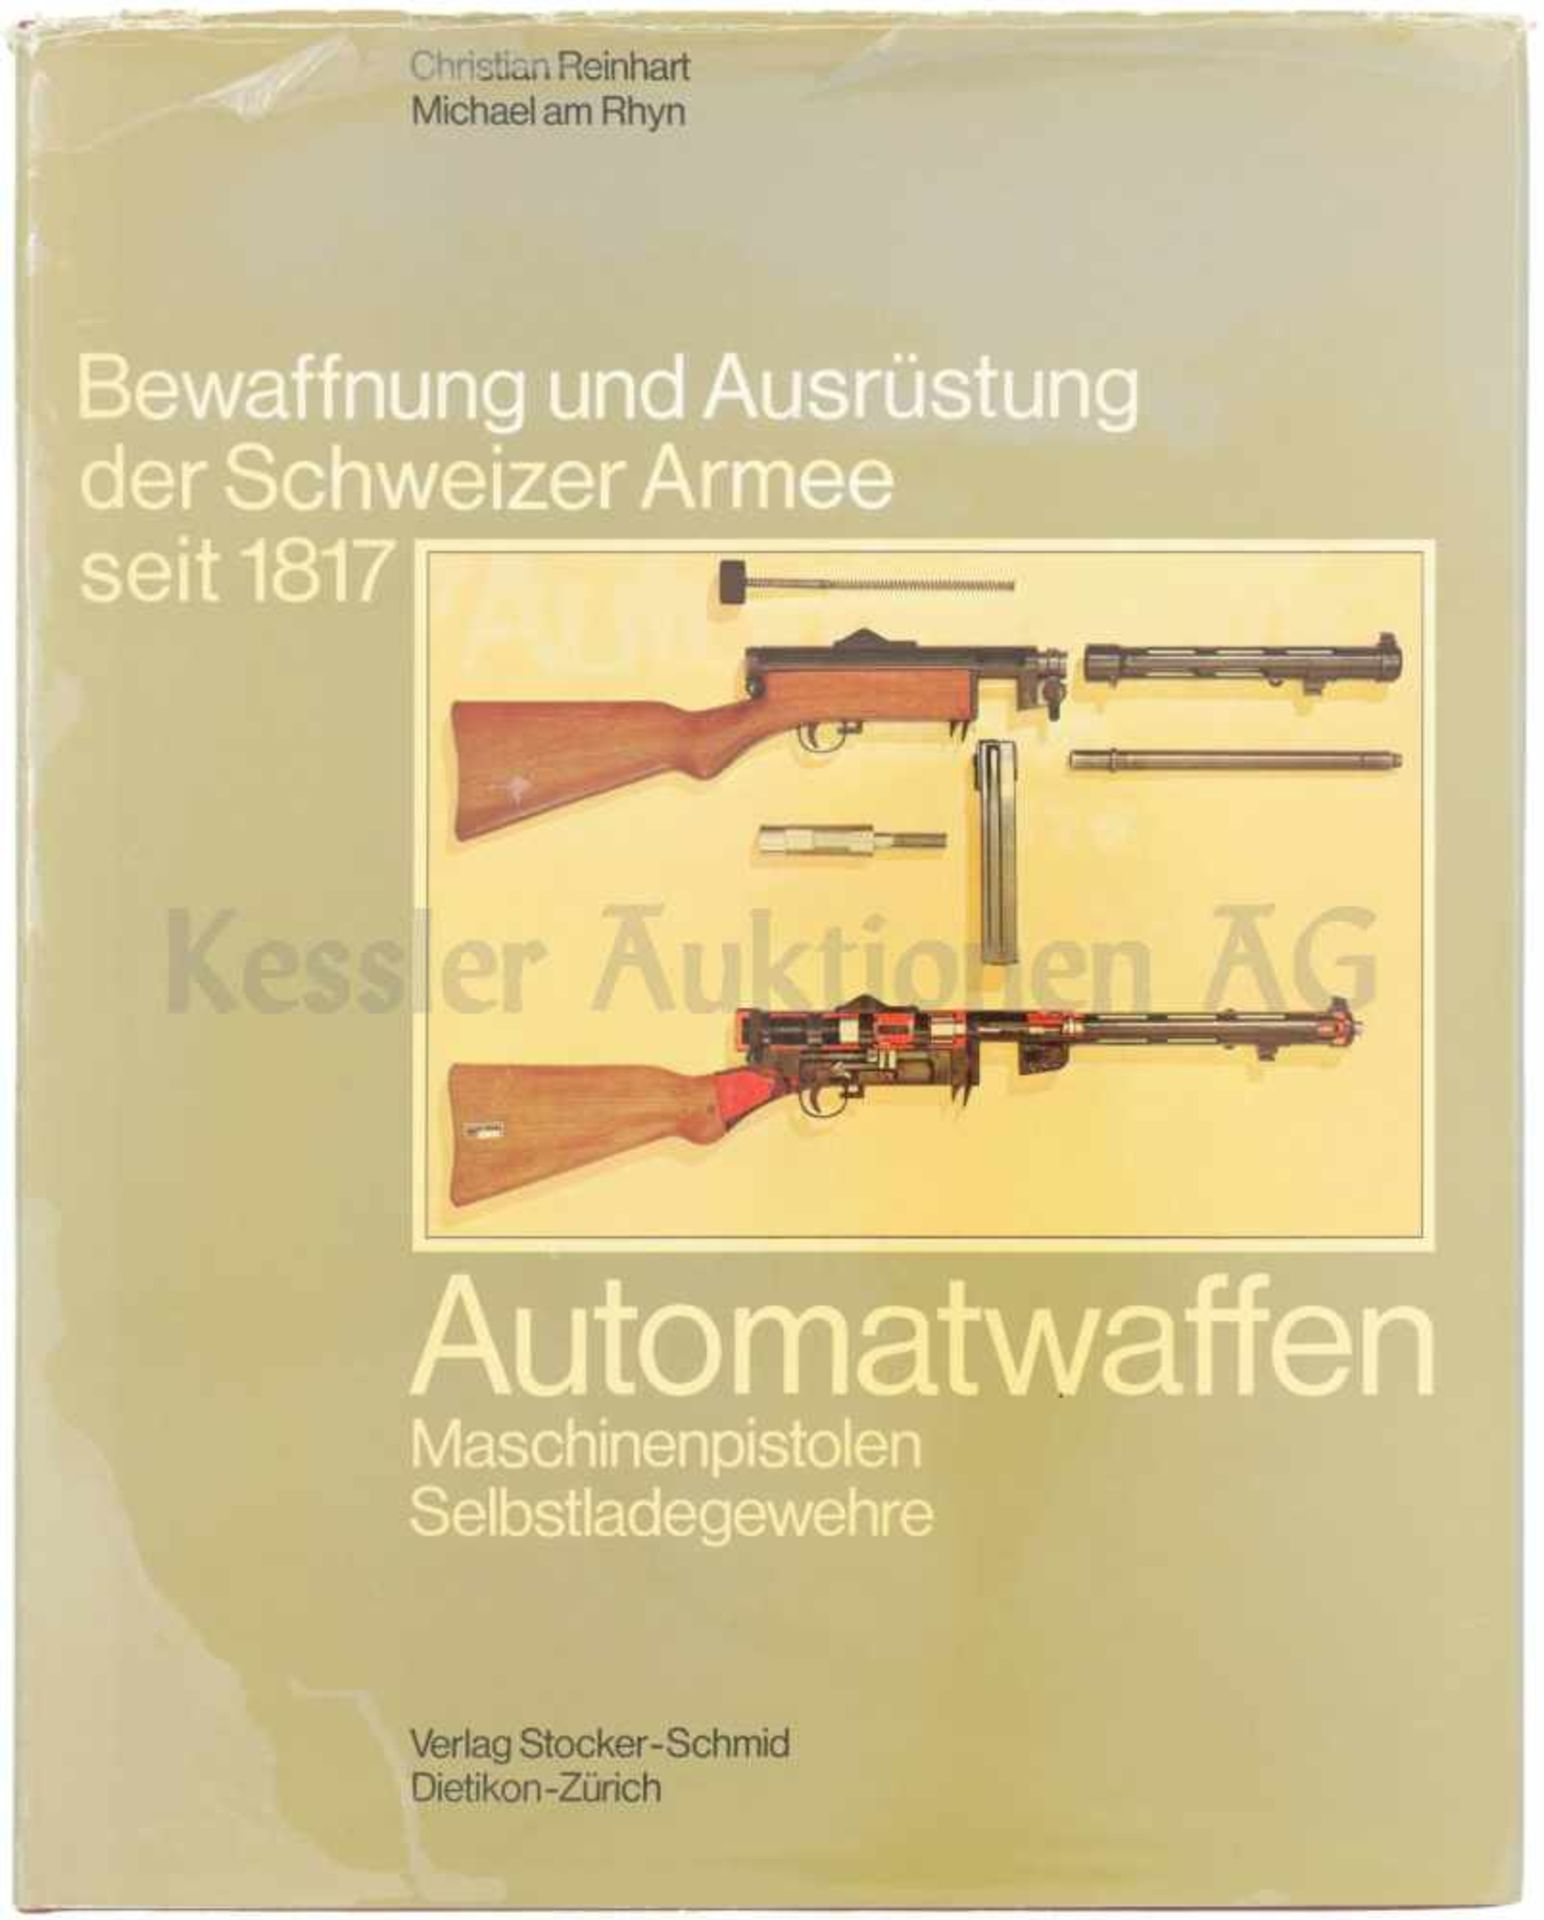 Bewaffnung und Ausrüstung der Schweizer Armee seit 1817, Automatwaffen Maschinenpistolen,